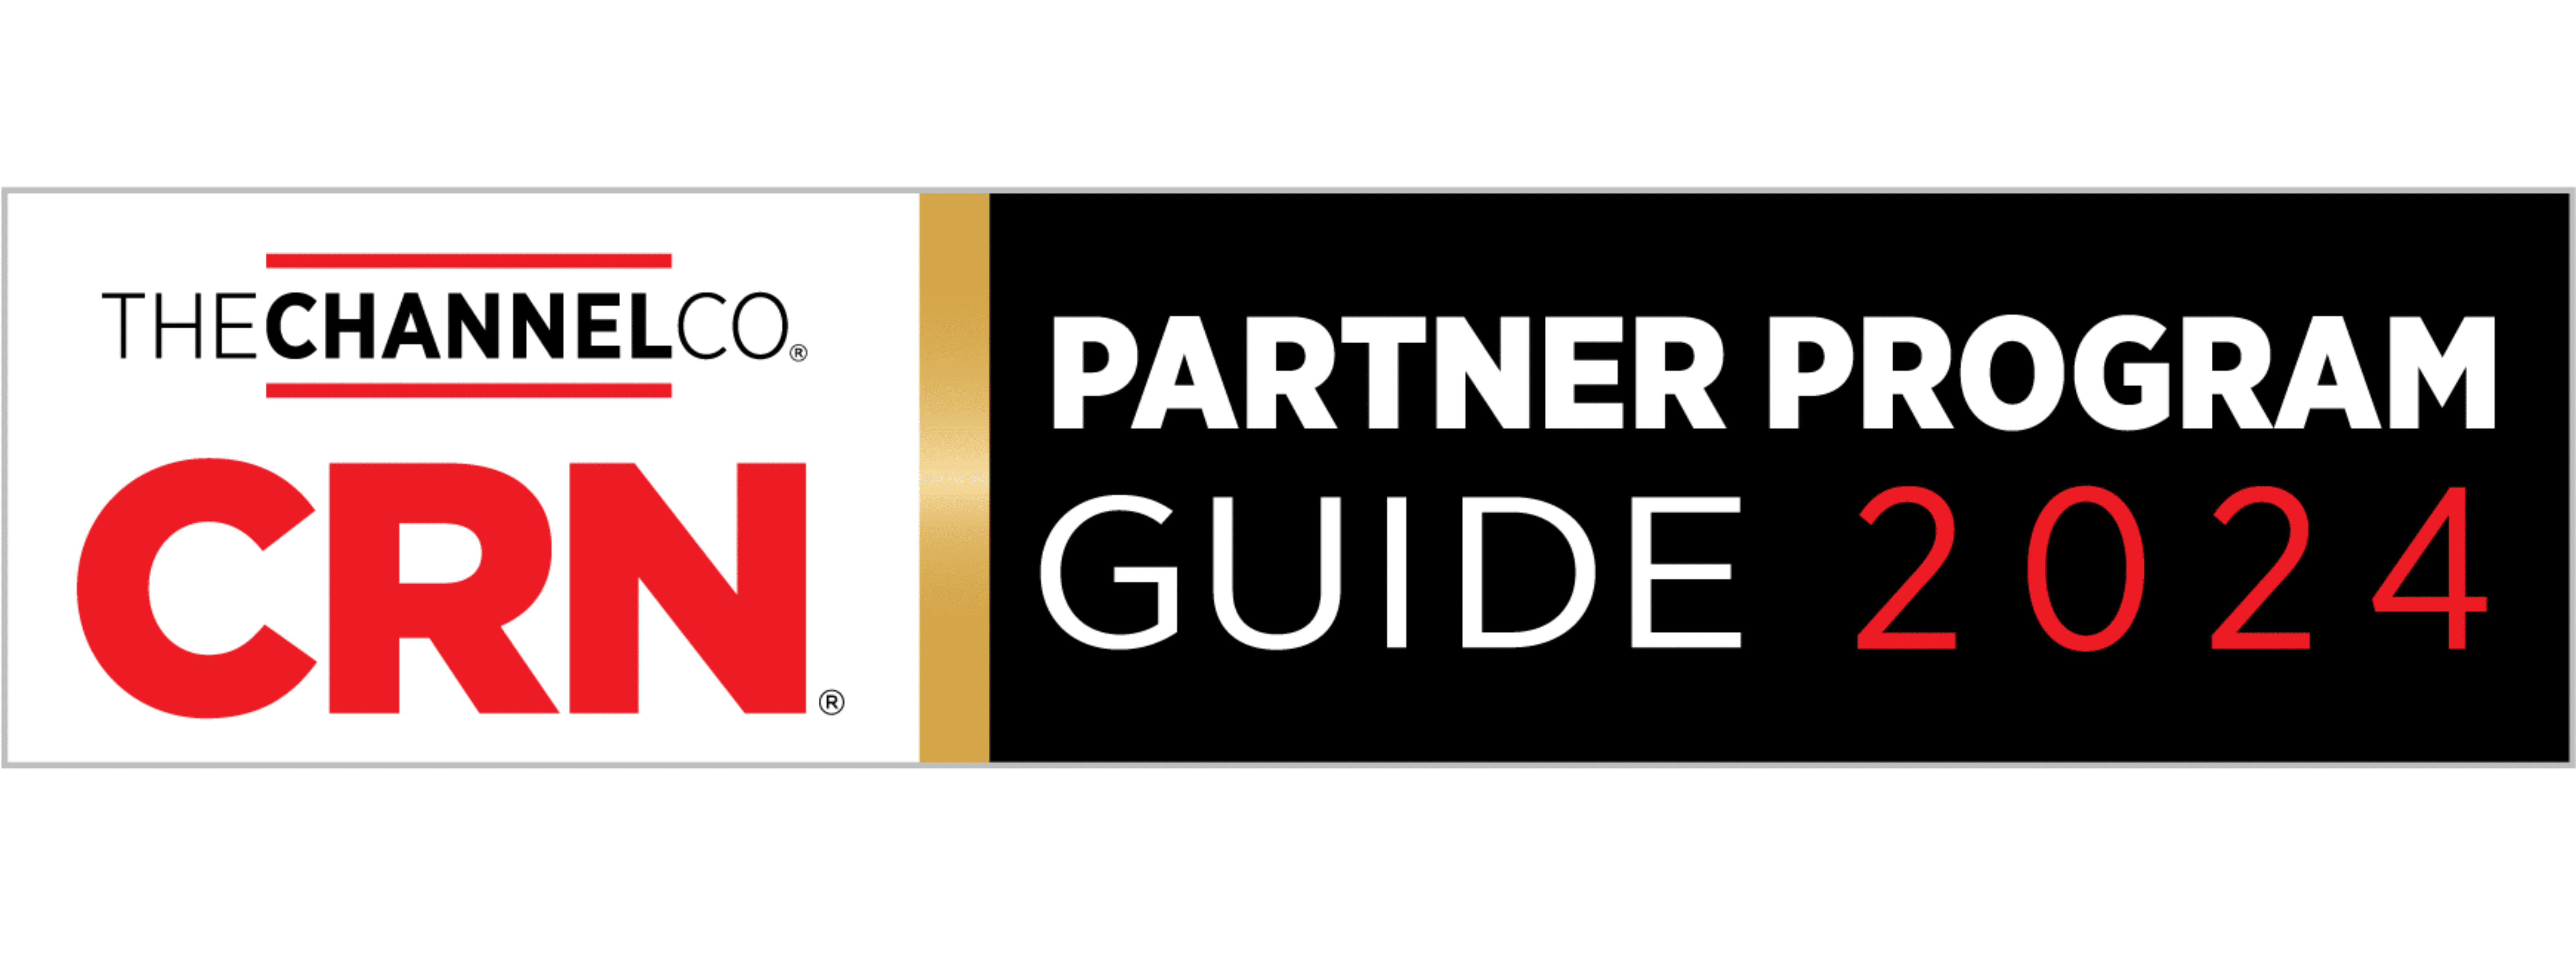 CRN partner program guide 2024